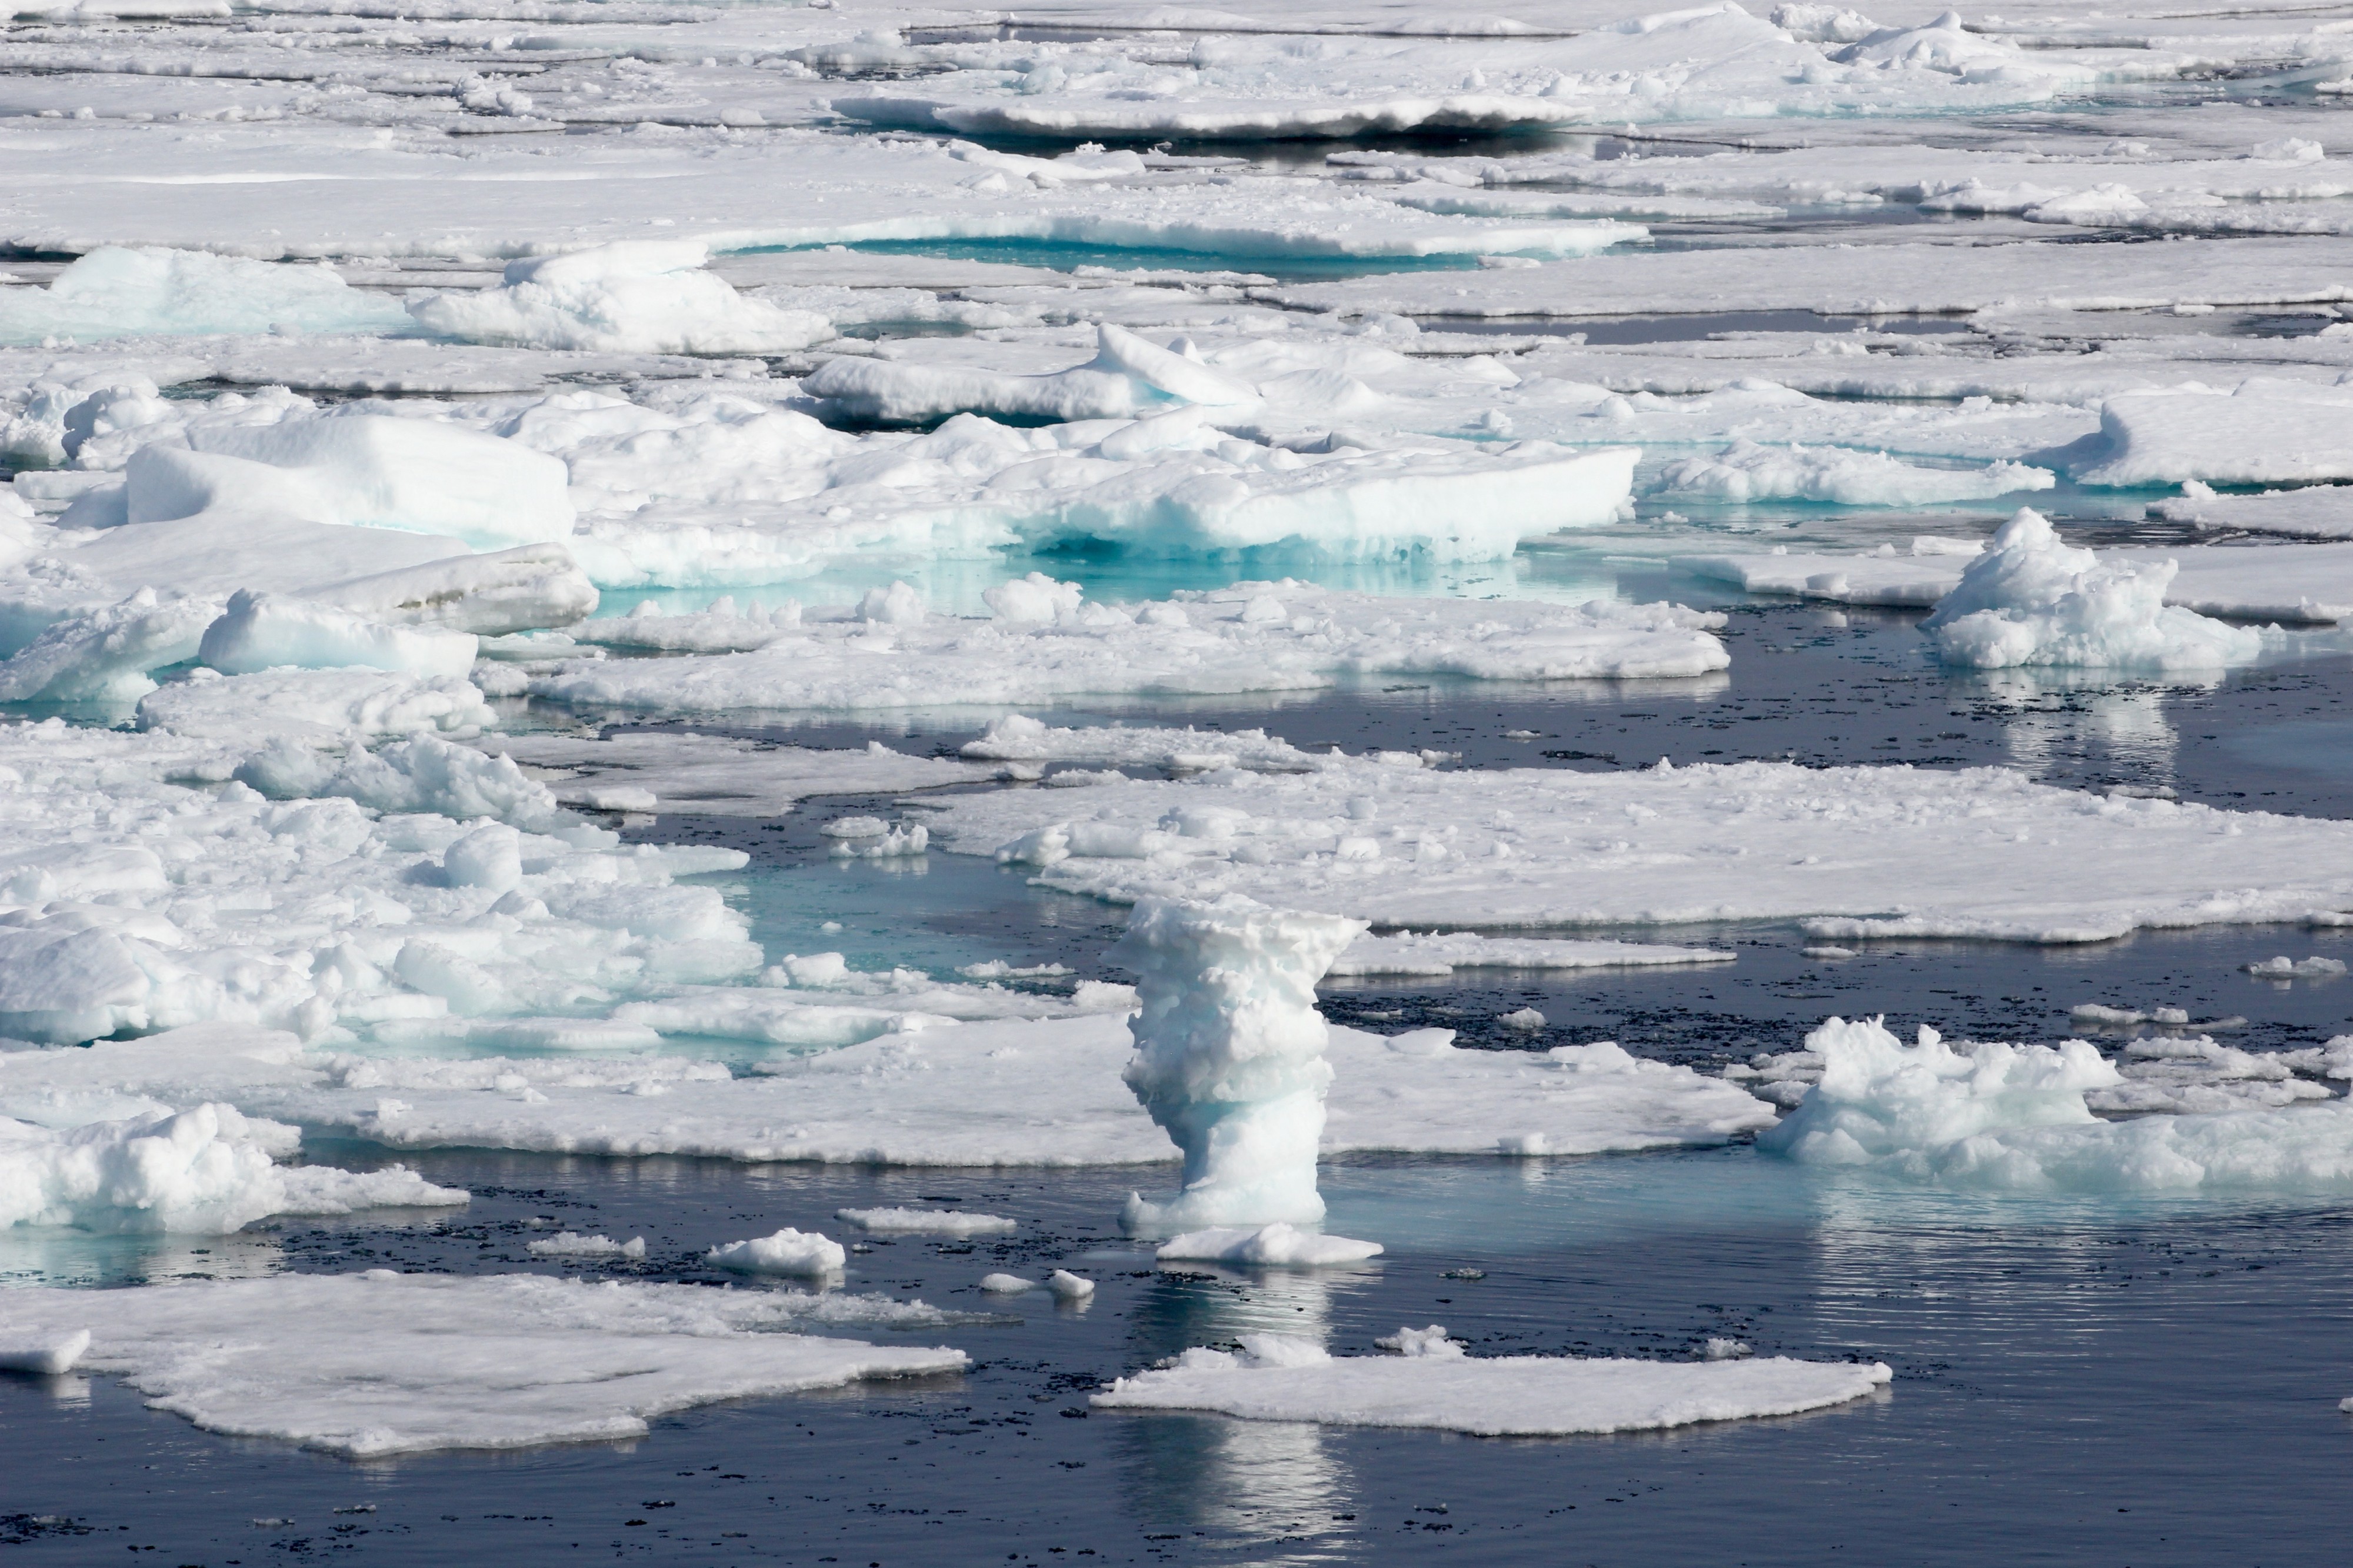 Ice Cruising in the Arctic (20284630265)